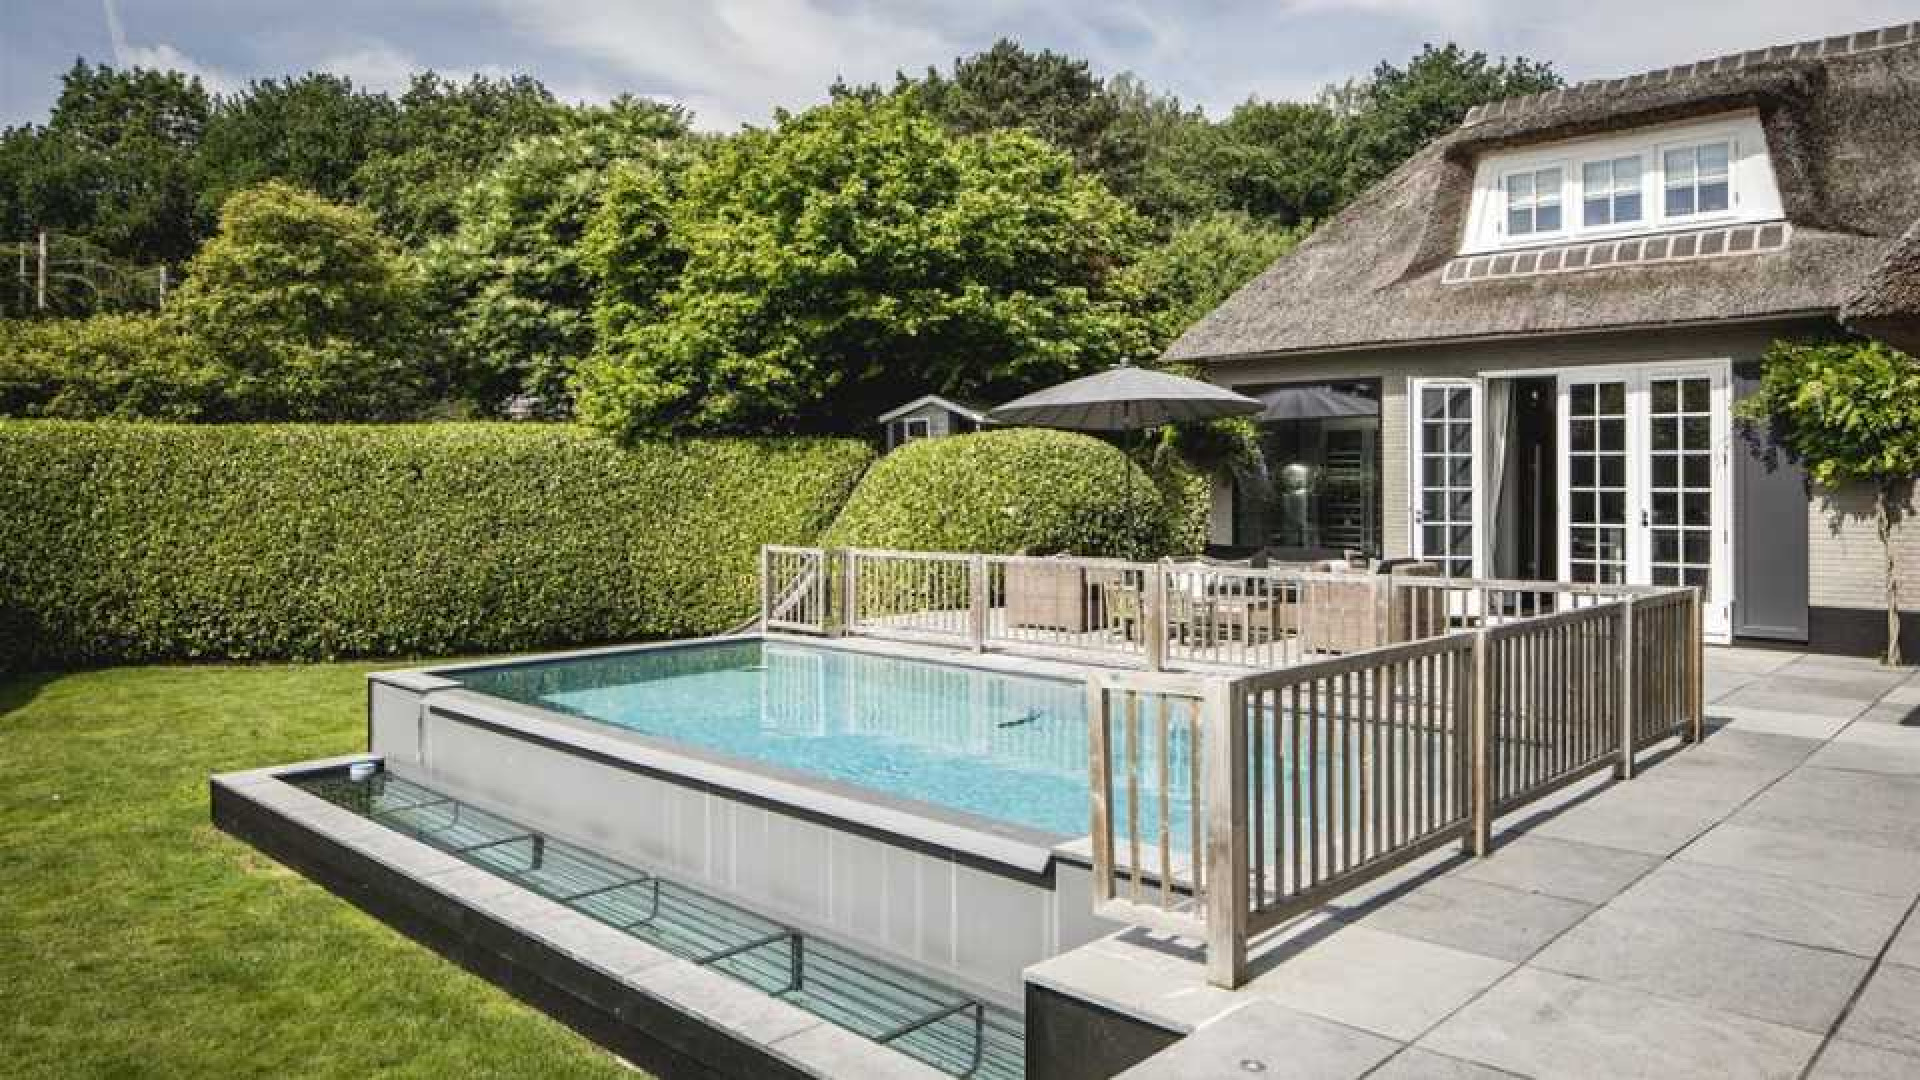 Winston en Renate Gerschtanowitz zetten hun villa met buiten zwembad te koop. Zie foto's 15